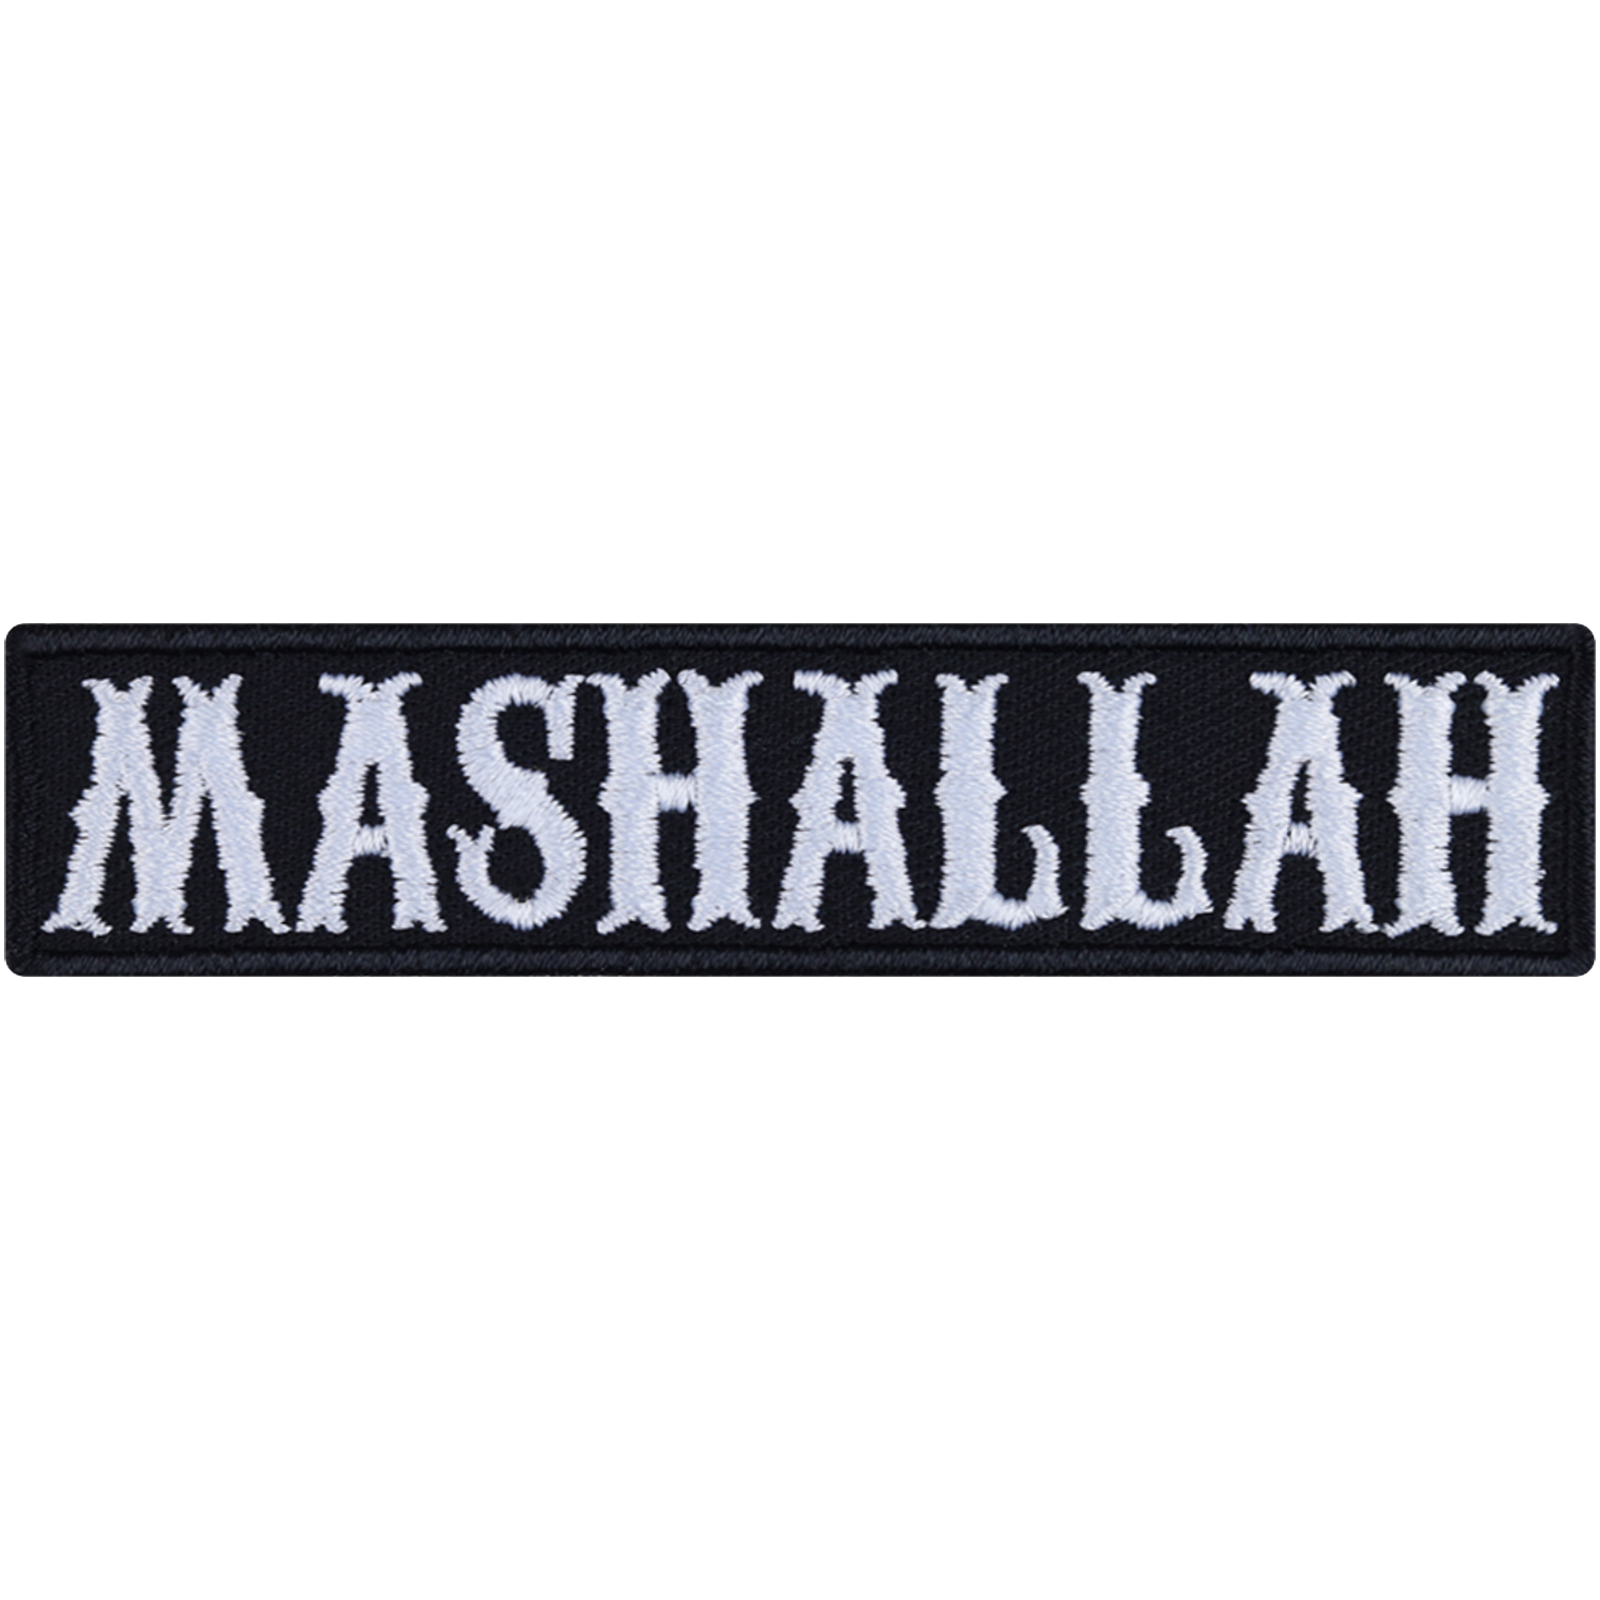 Mashallah - Patch